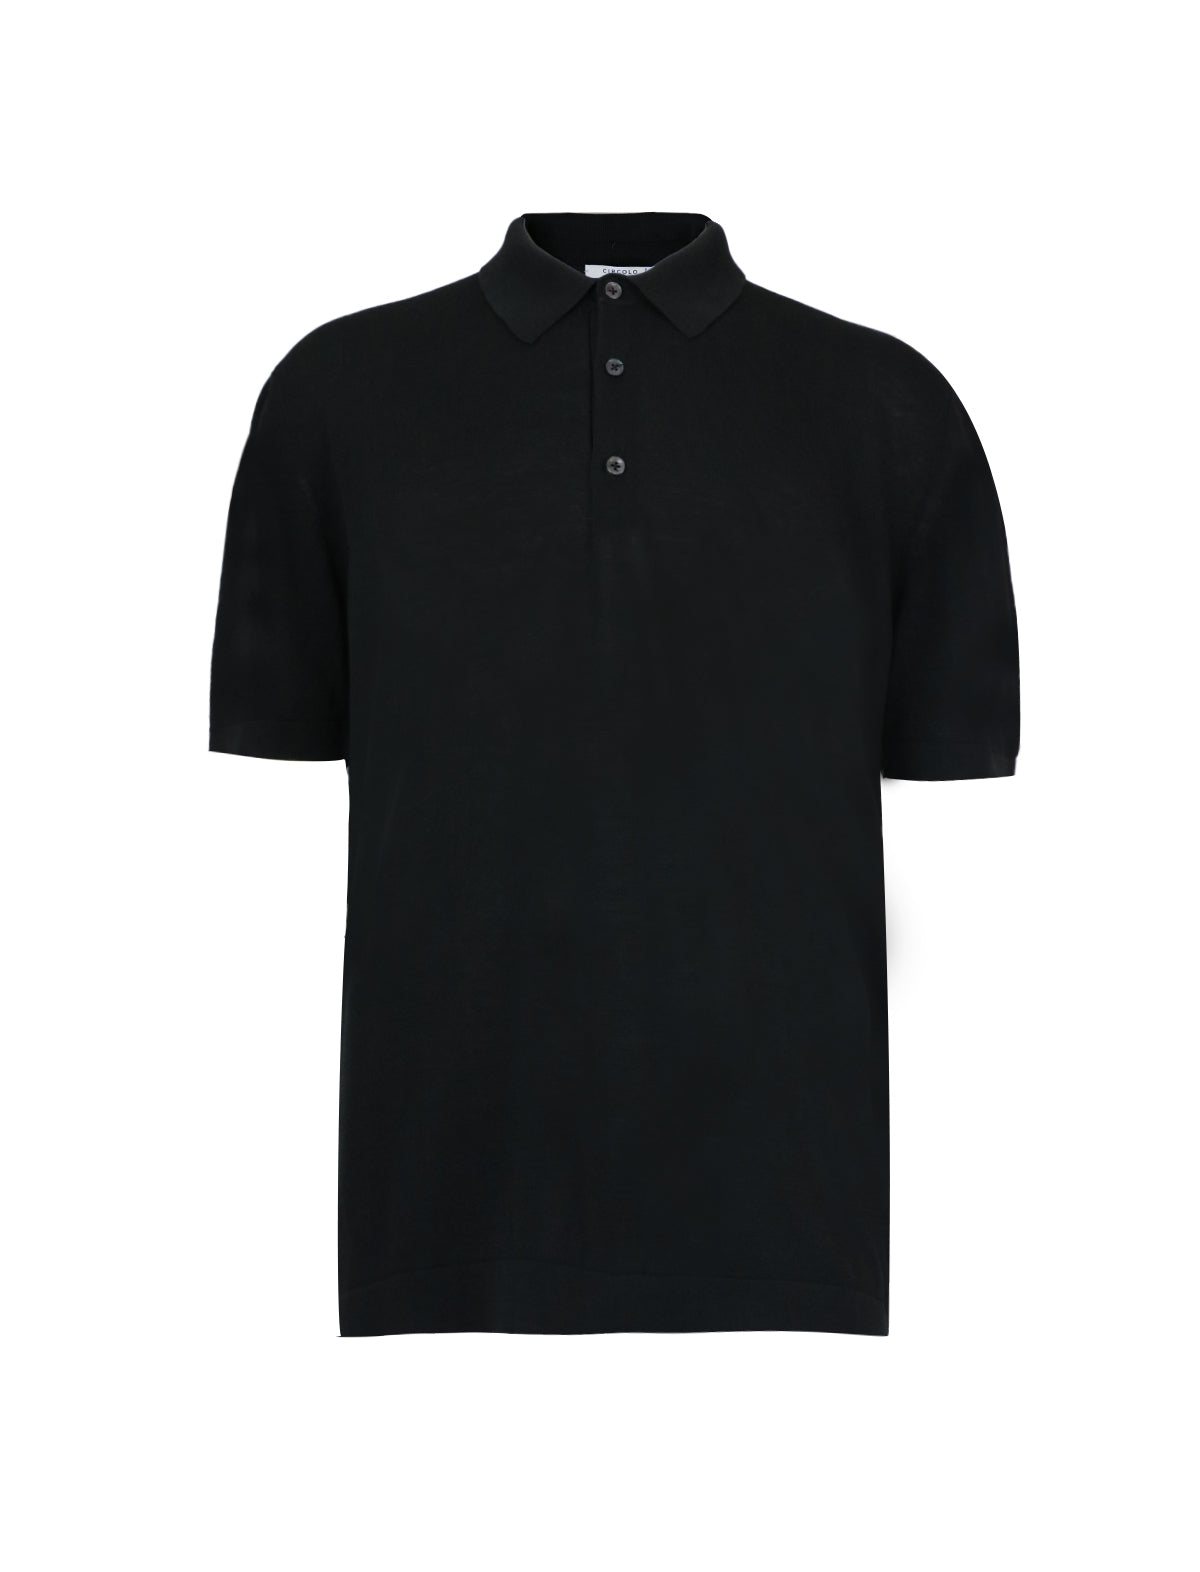 CIRCOLO 1901 Cotton Polo Shirt in Black